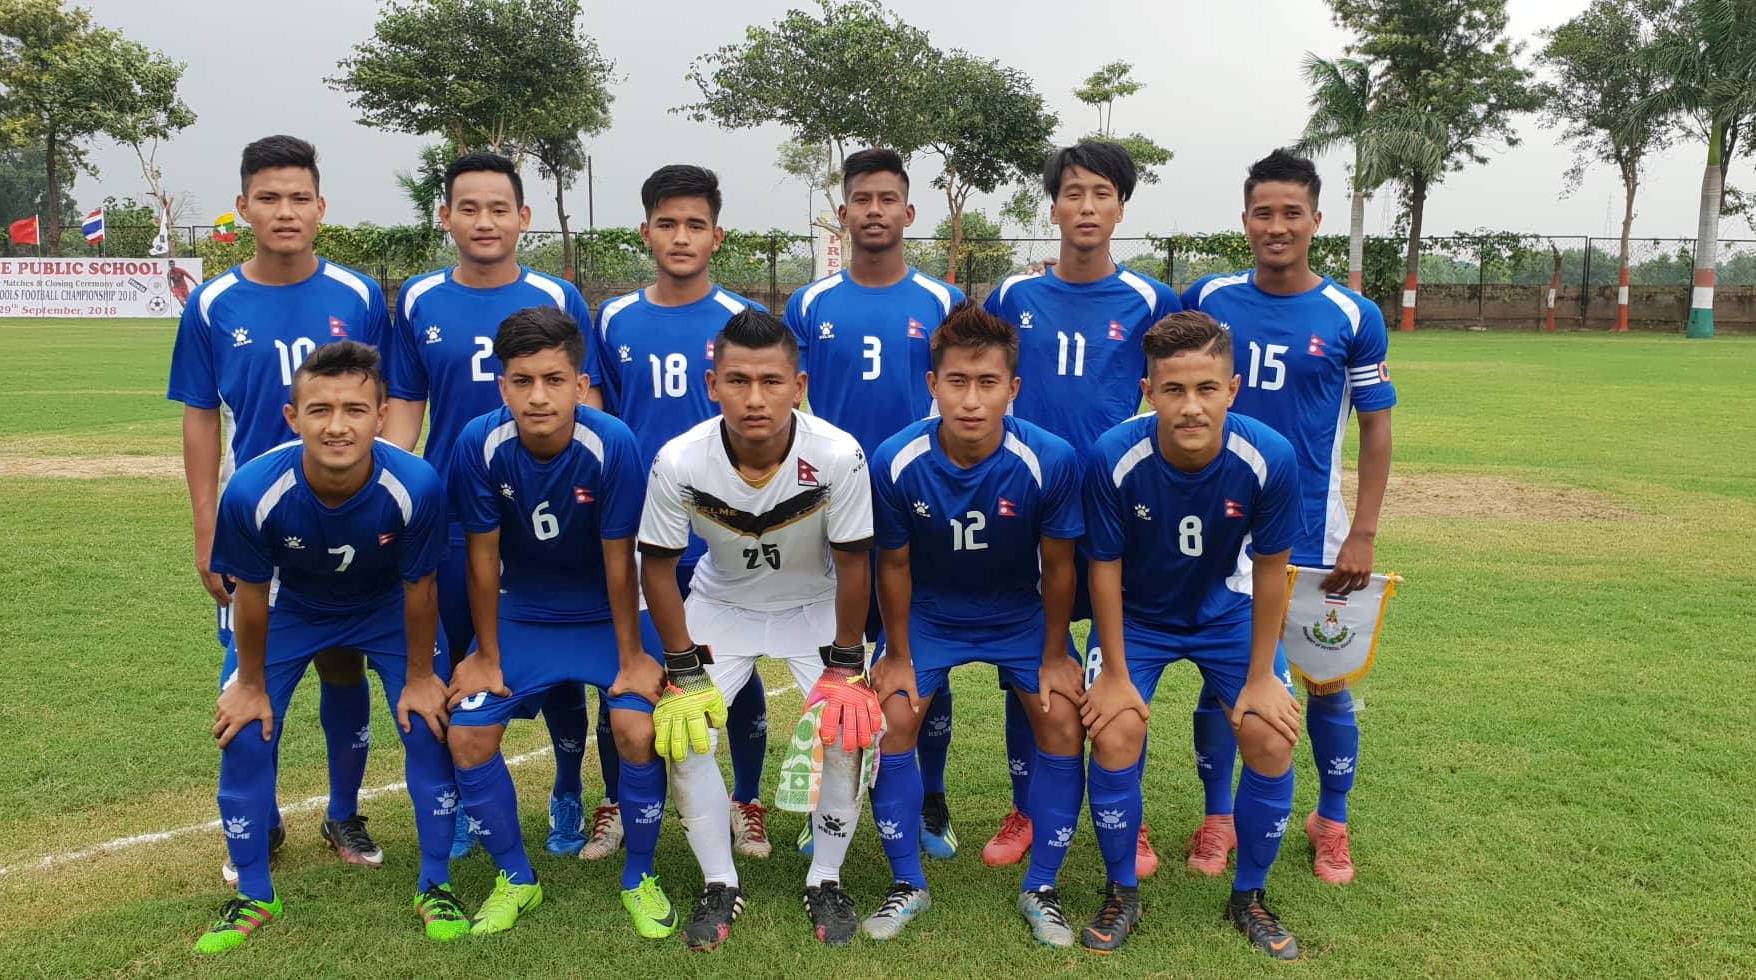 यू–१८ च्याम्पियनसीप फुटबल प्रतियोगितामा थाईल्याण्डसंग नेपाल पराजित